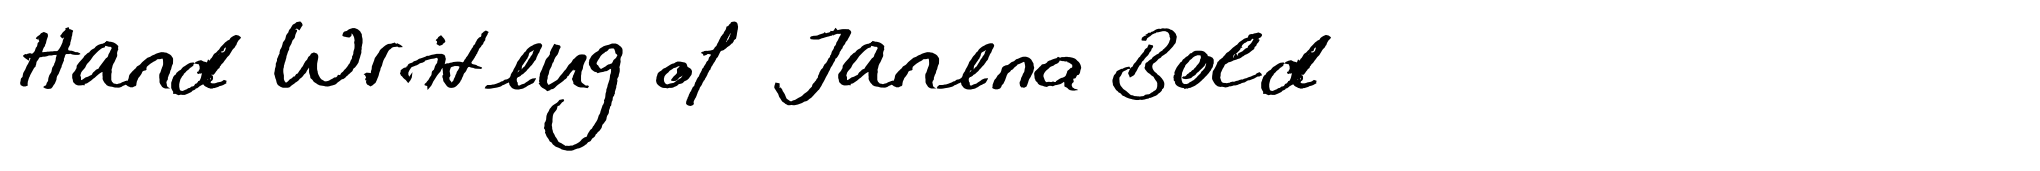 Hand Writing of Janina Bold image